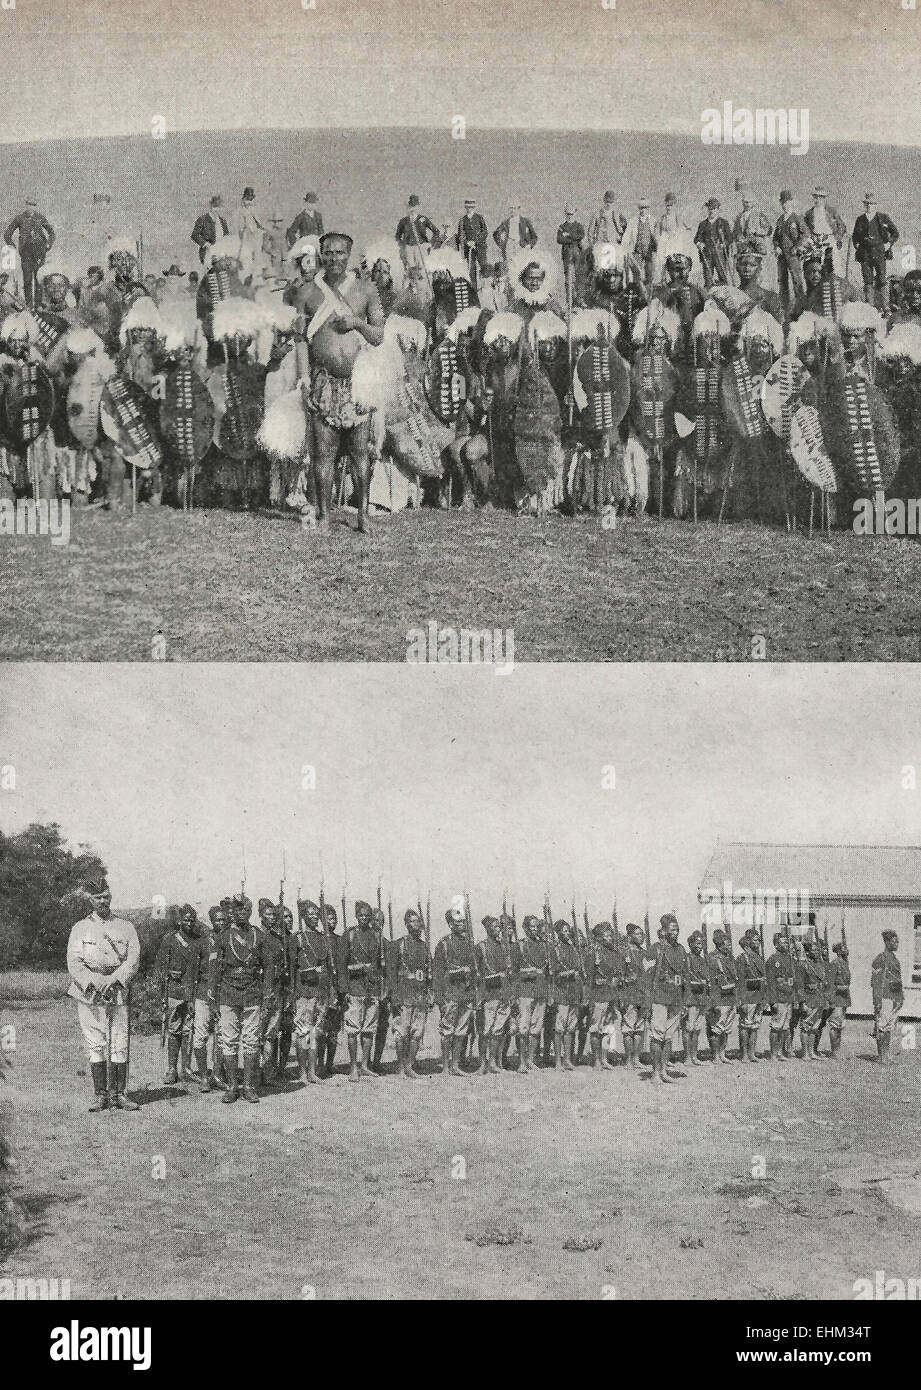 Guerrieri Zulu - 'rozzi e civilizzato" - due immagini di guerrieri Zulu, la parte inferiore essendo addestrato dagli inglesi, circa 1895 Foto Stock